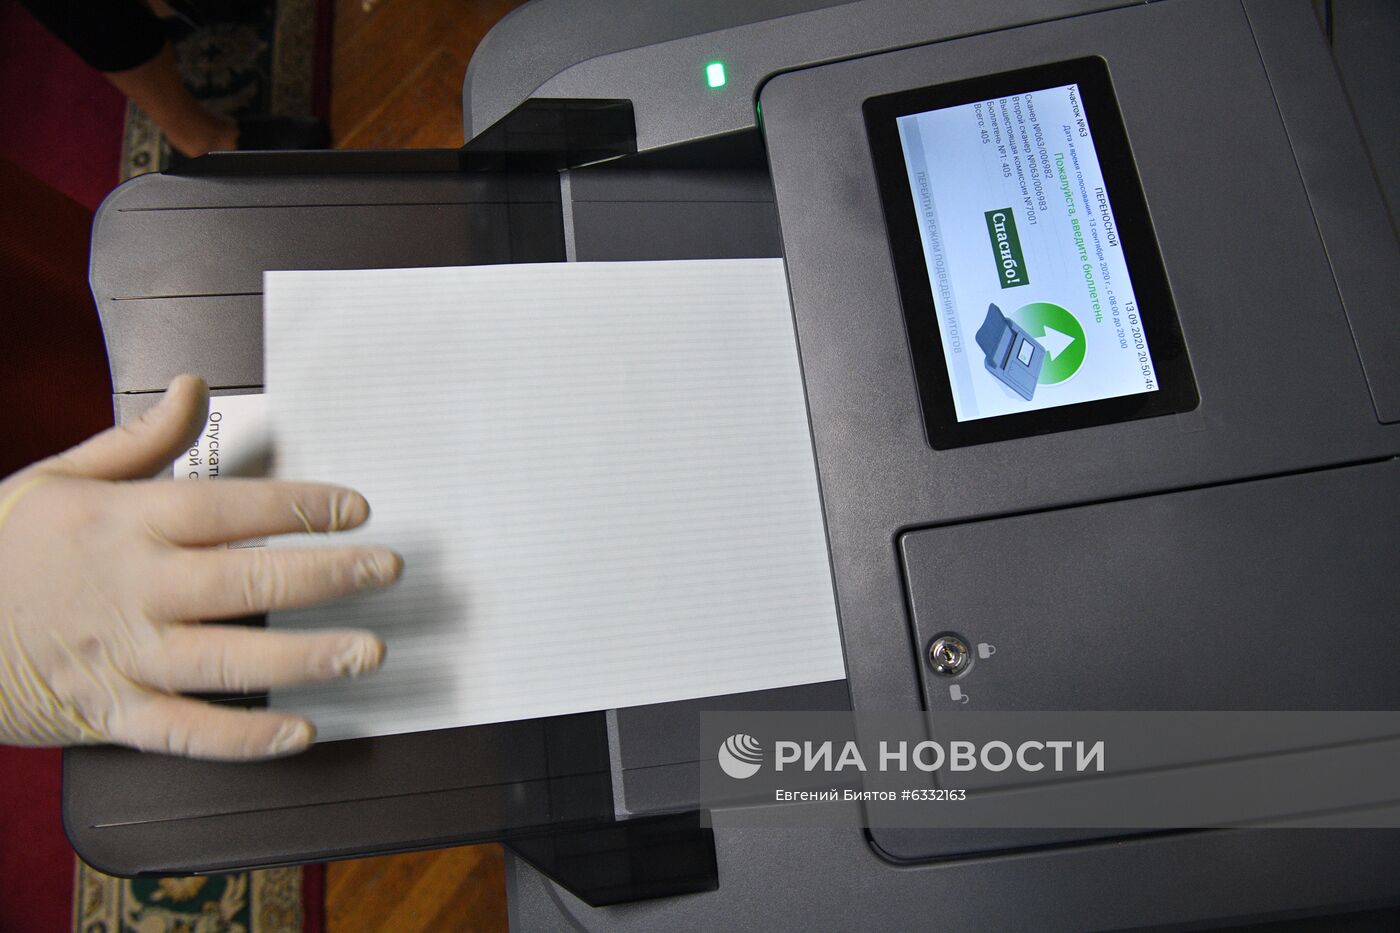 Подсчет голосов на выборах в единый день голосования 